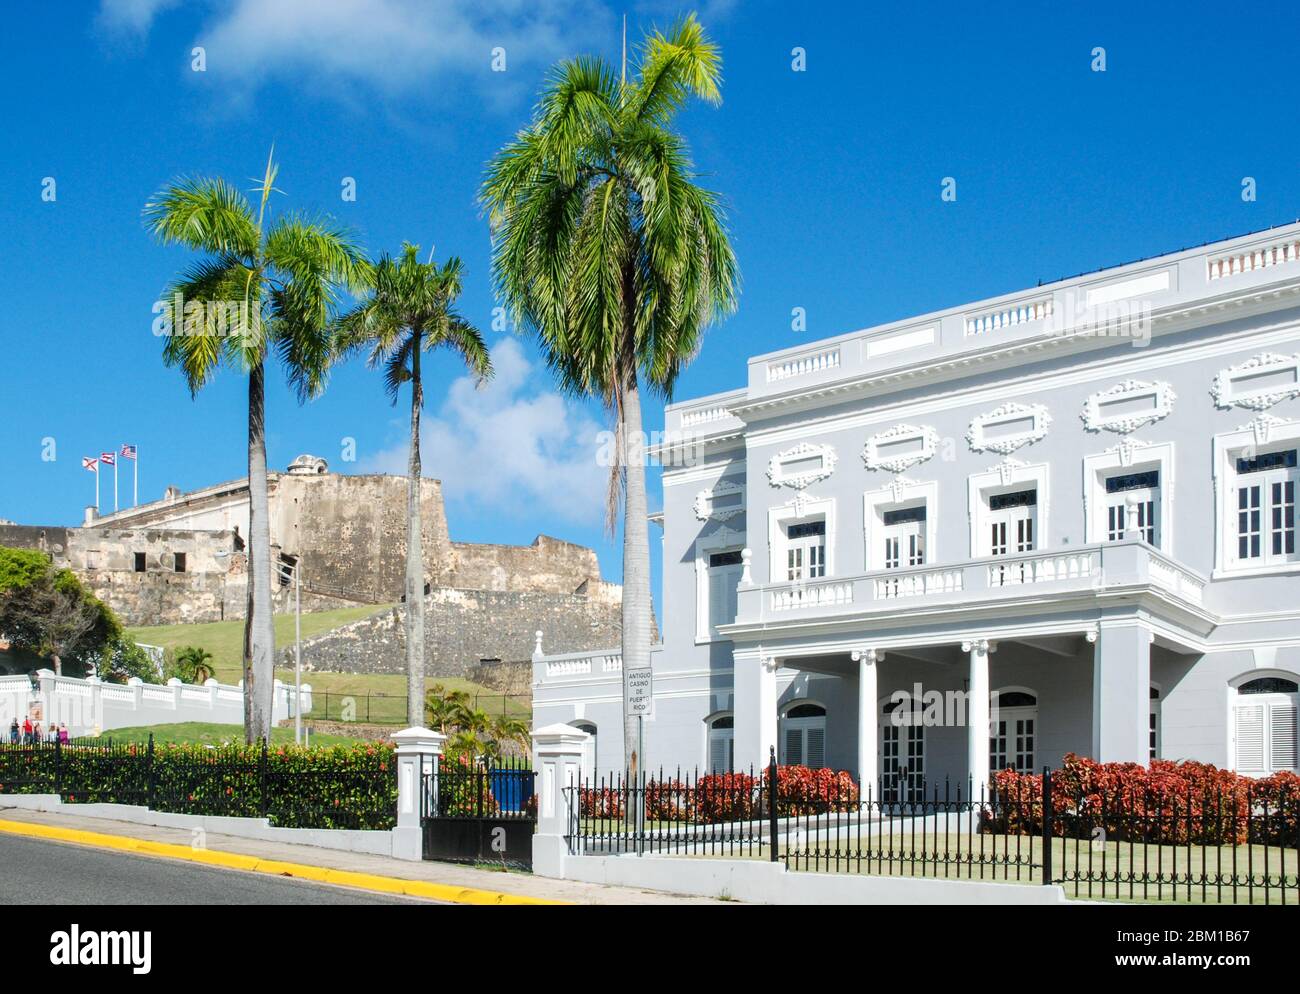 Das alte Casino-Gebäude, ein Kolonialgebäude in Old San Juan, Puerto Rico, mit der Festung Castillo San Cristobal im Hintergrund Stockfoto